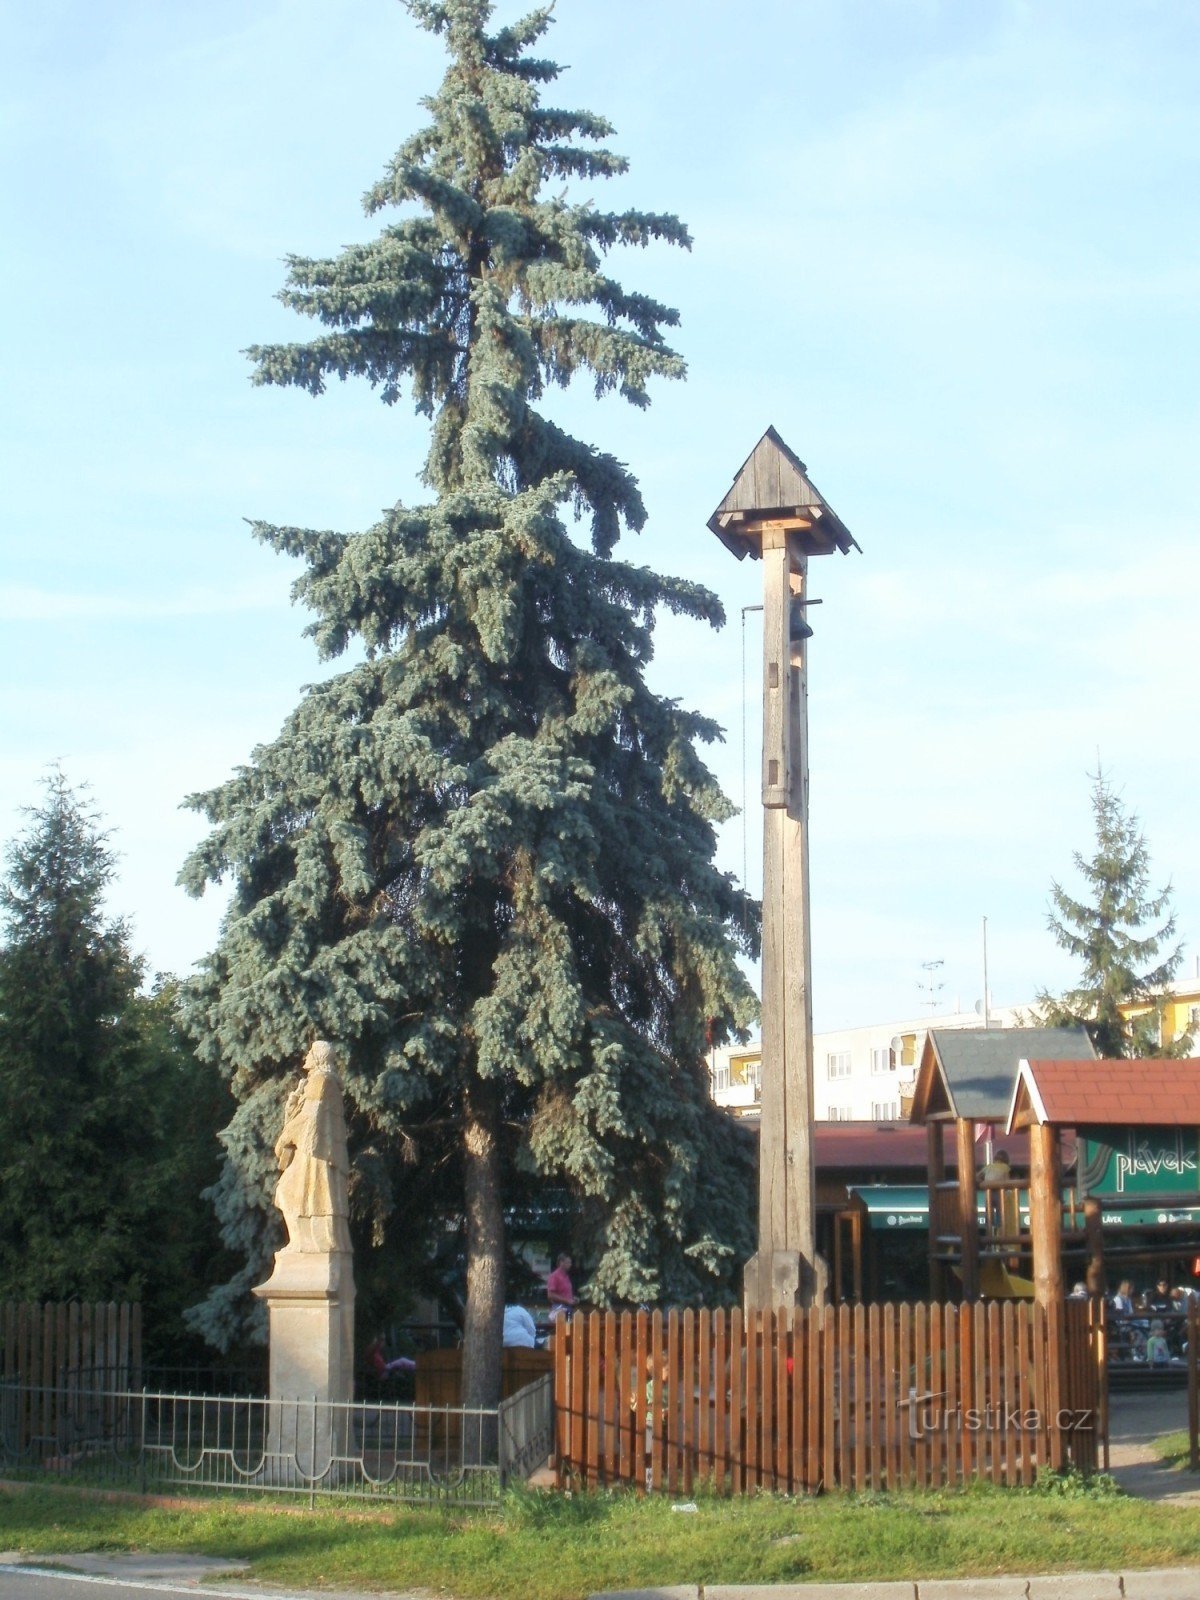 Hradec Králové - tháp chuông trên đê